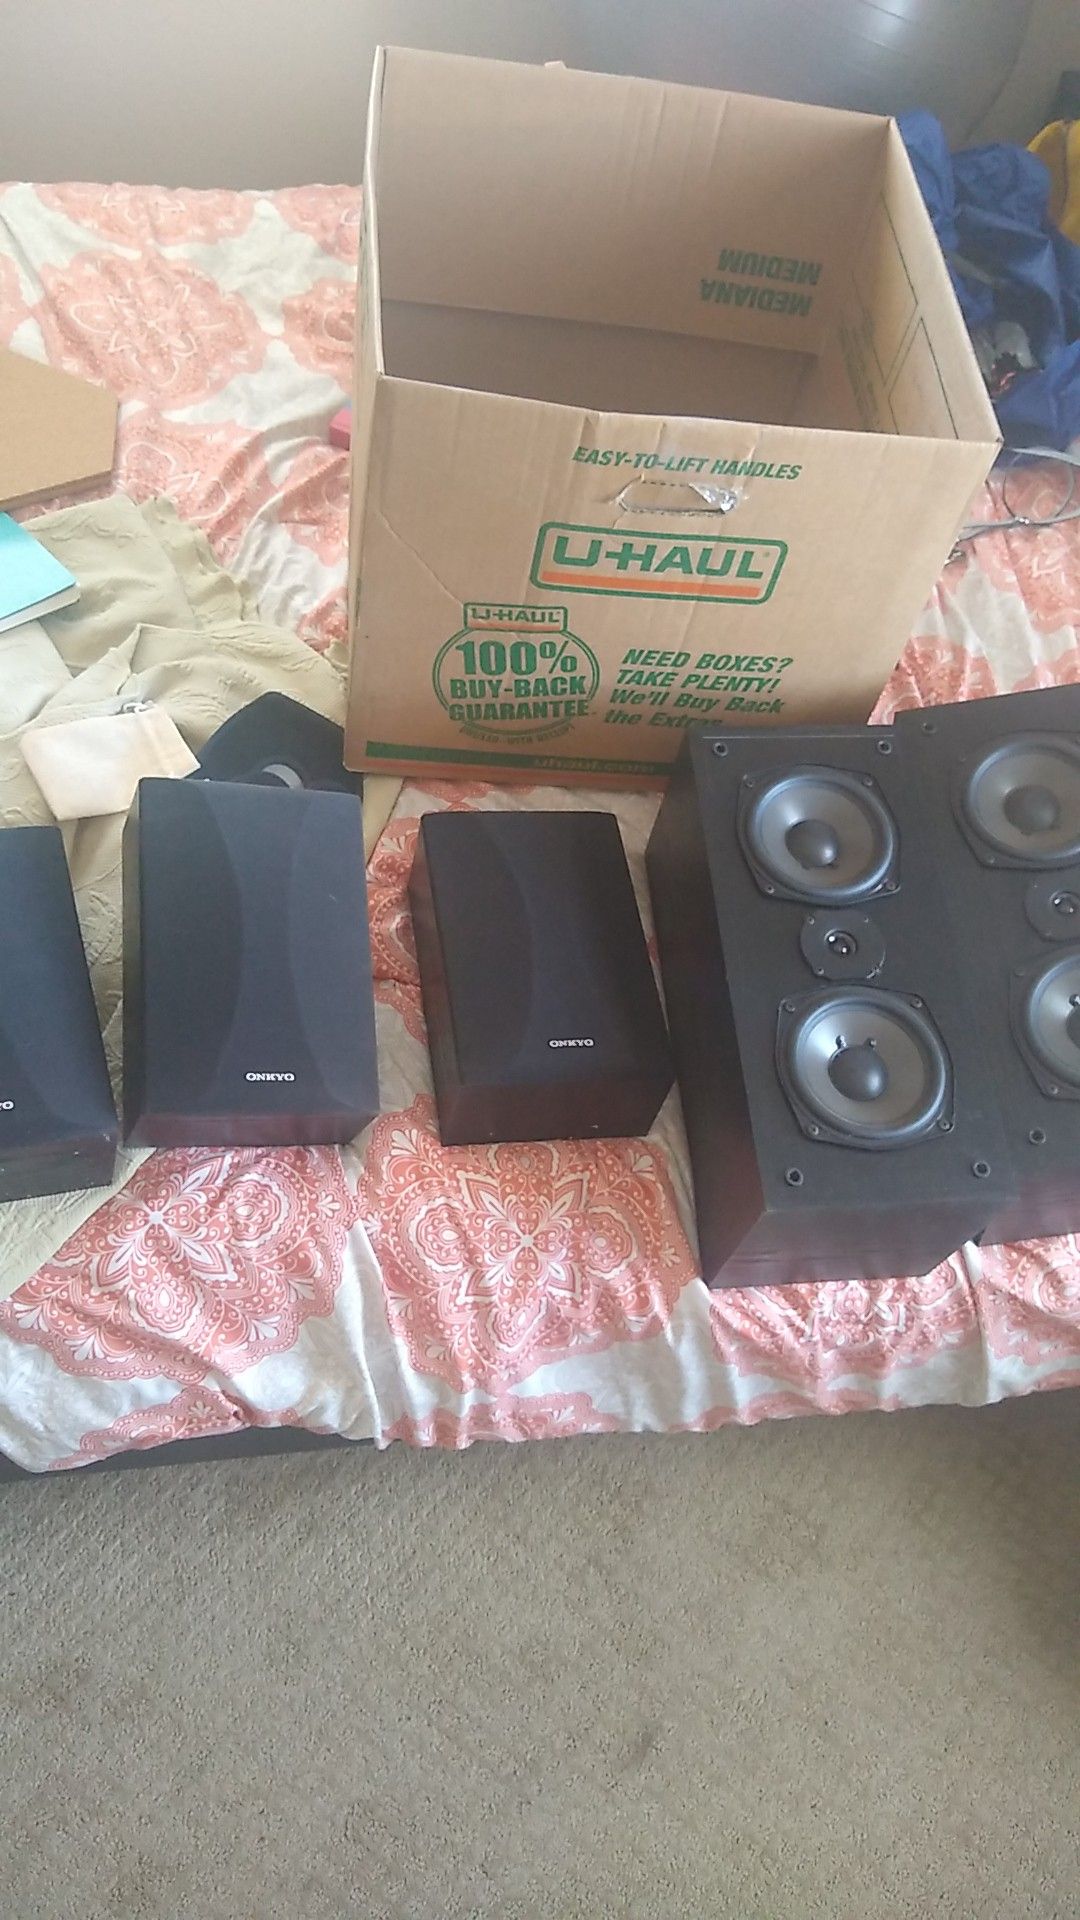 Onkyo Surround Sound Speakers - 5 piece